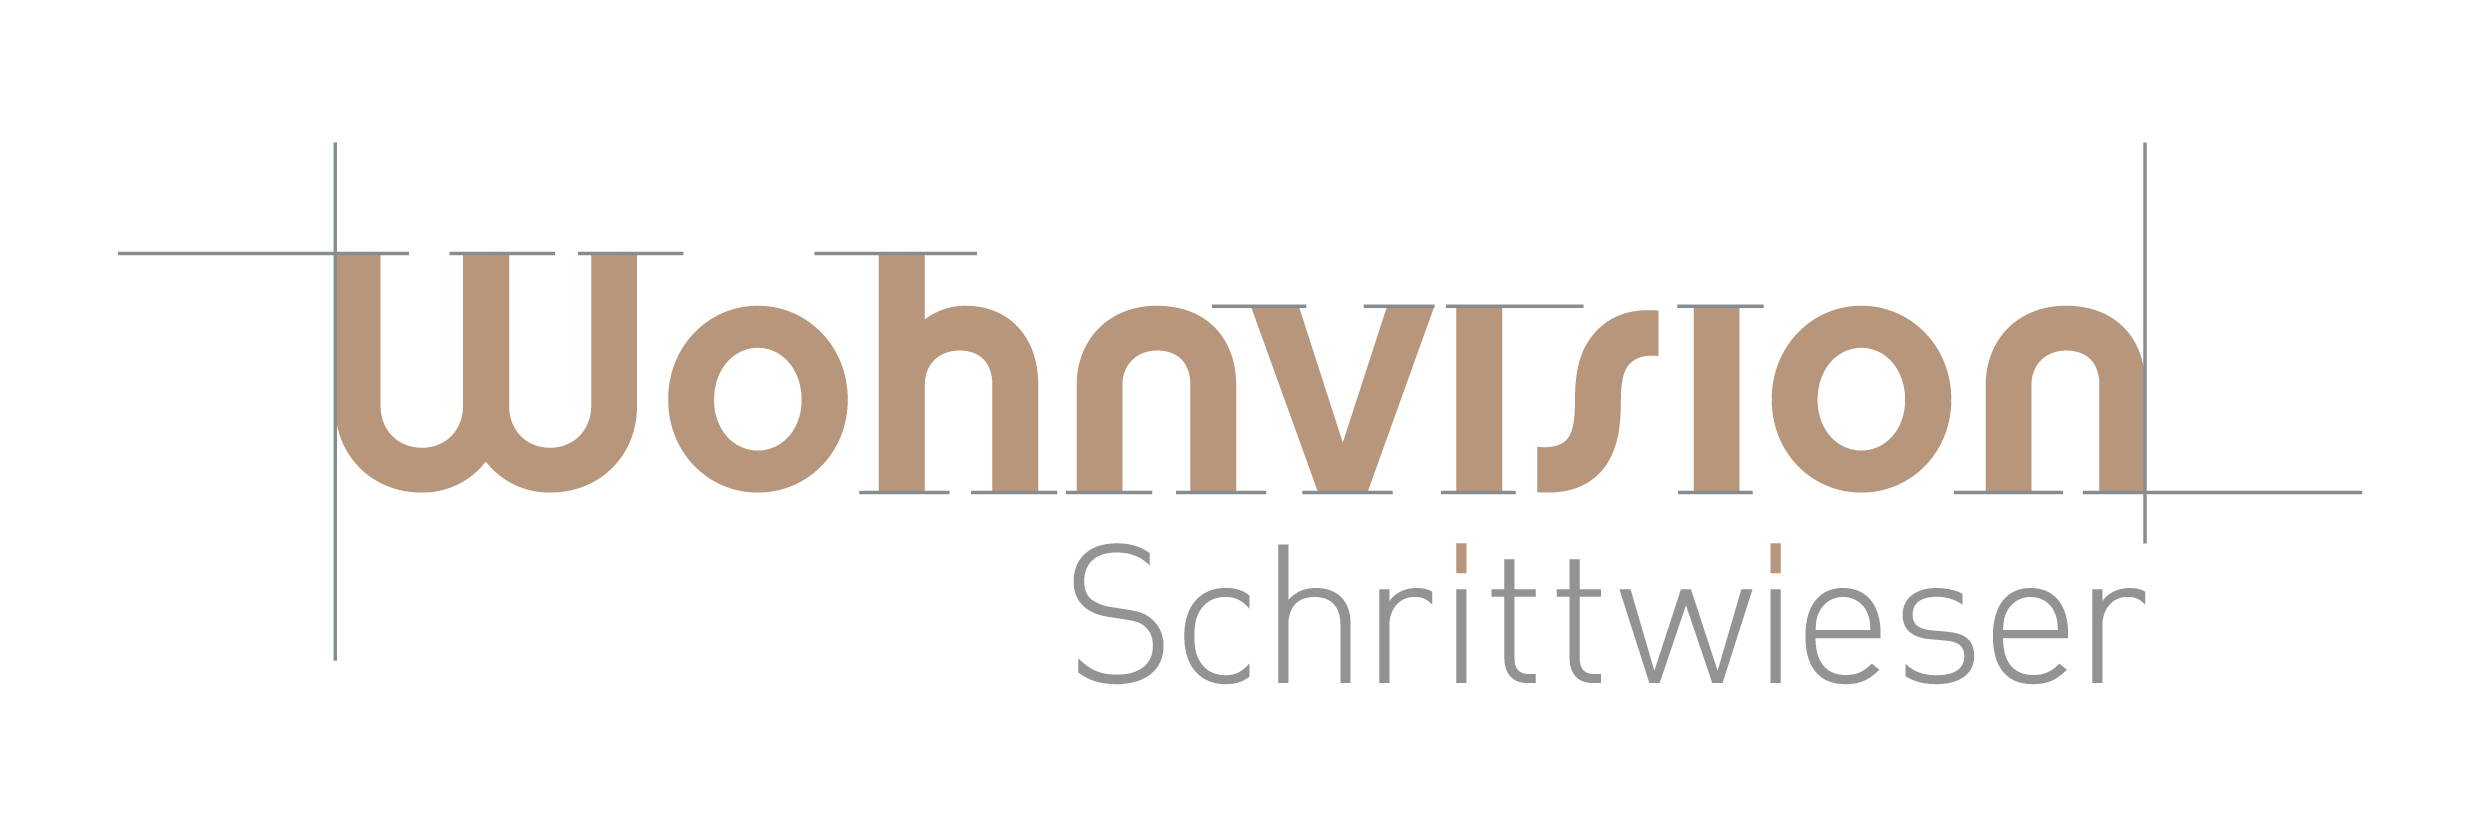 Innenarchitektur Judith Schrittwieser_Logo